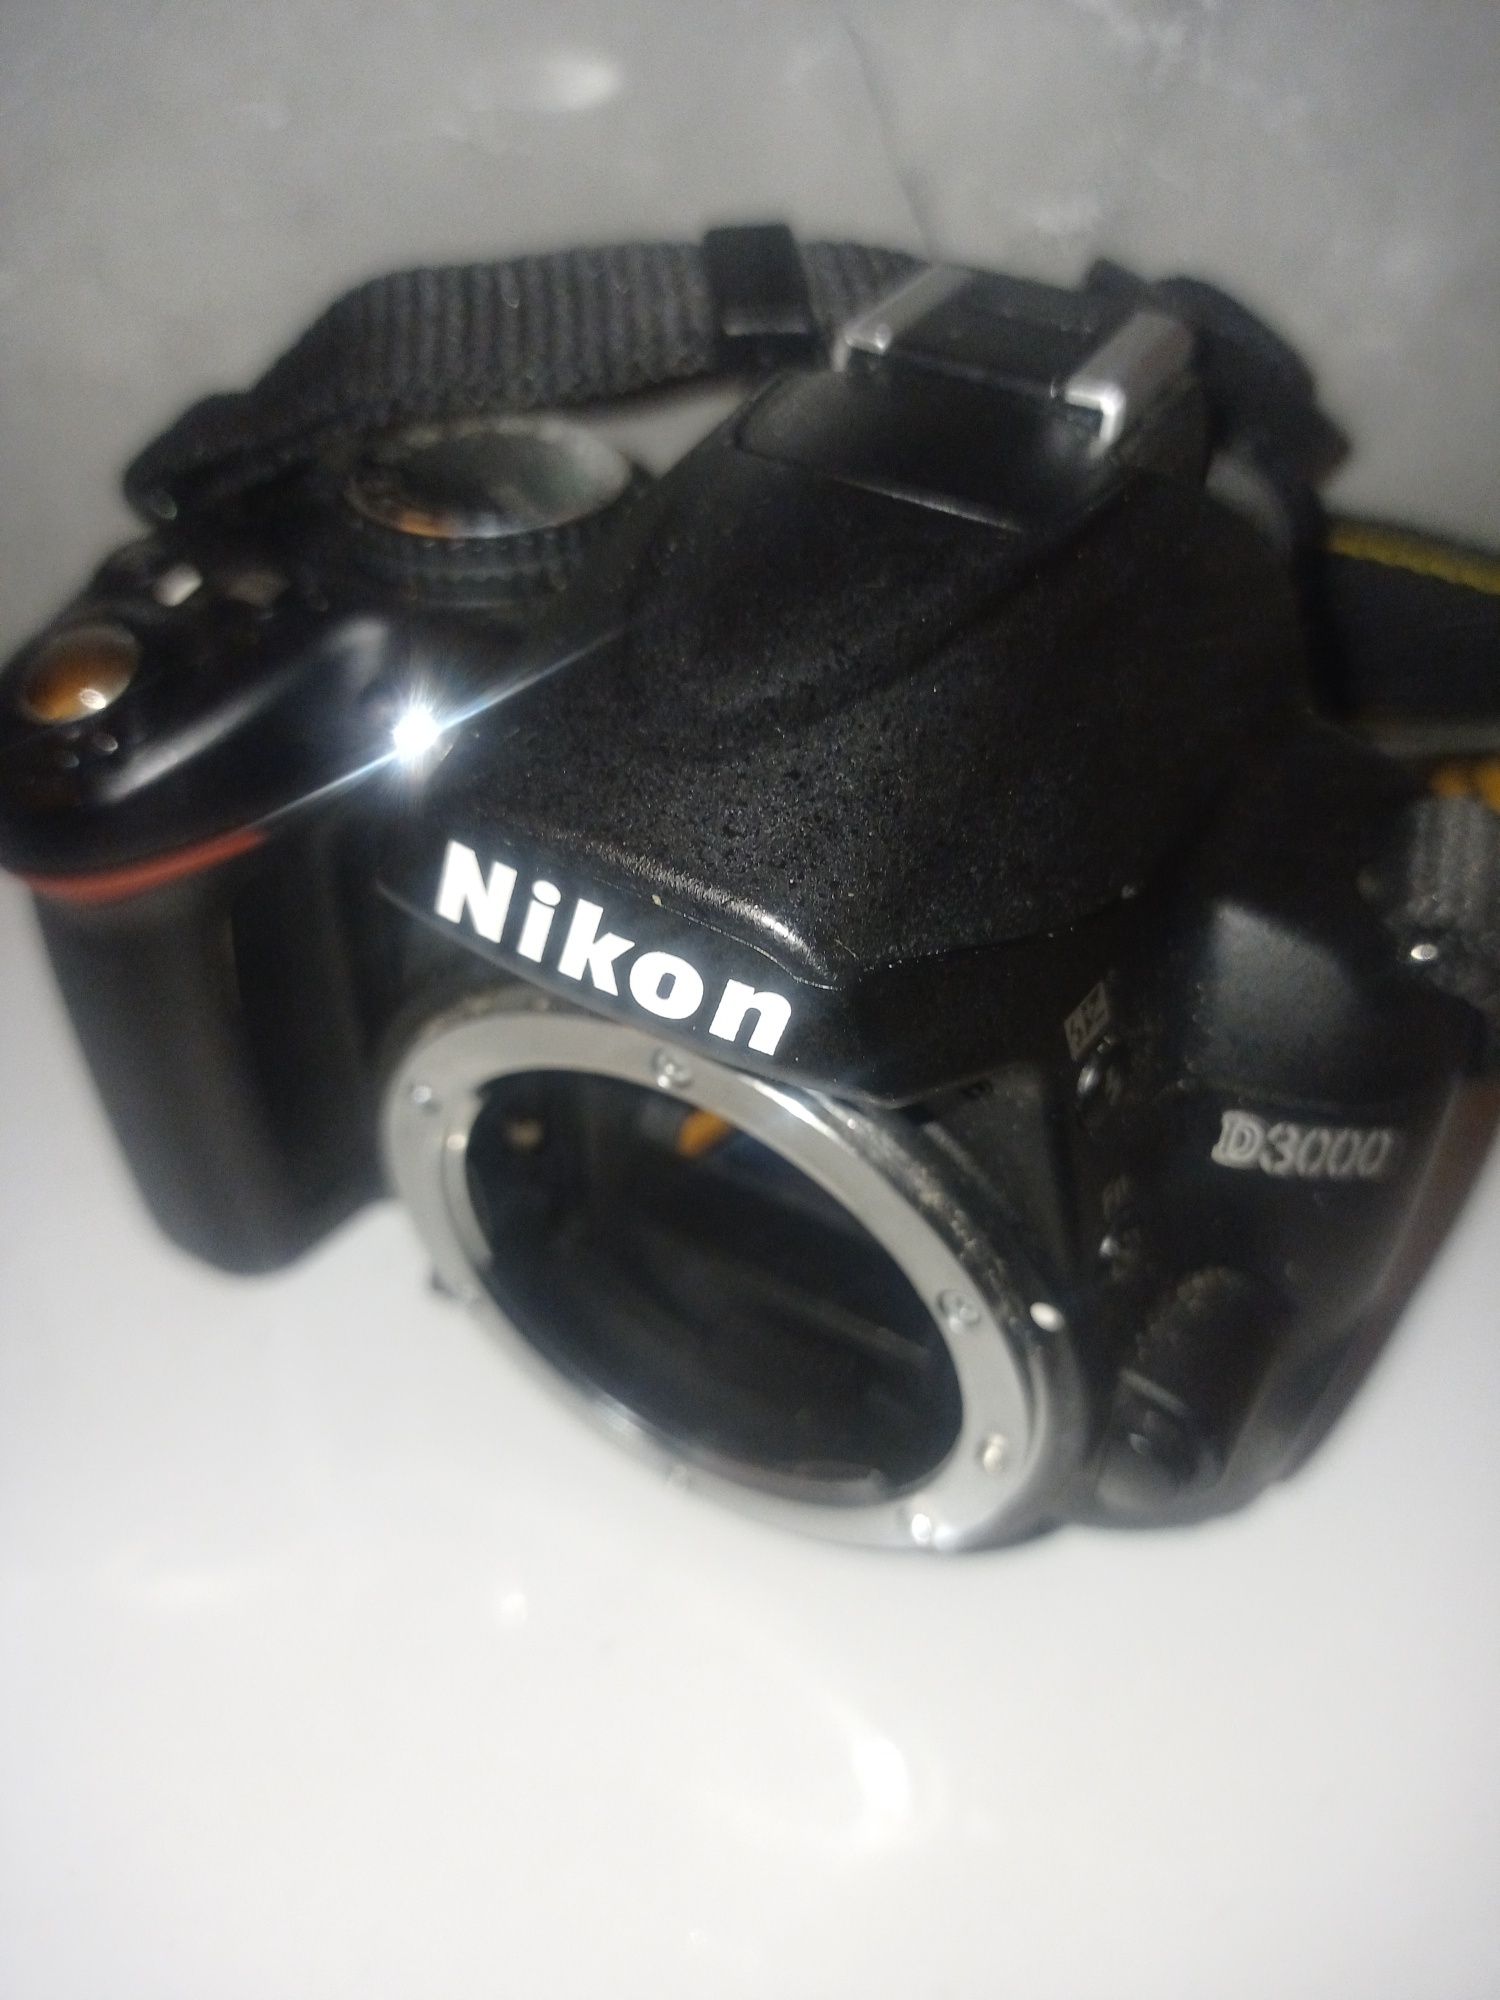 Boody aparatu Nikon D 3000 cyfrowego  lustrzanka